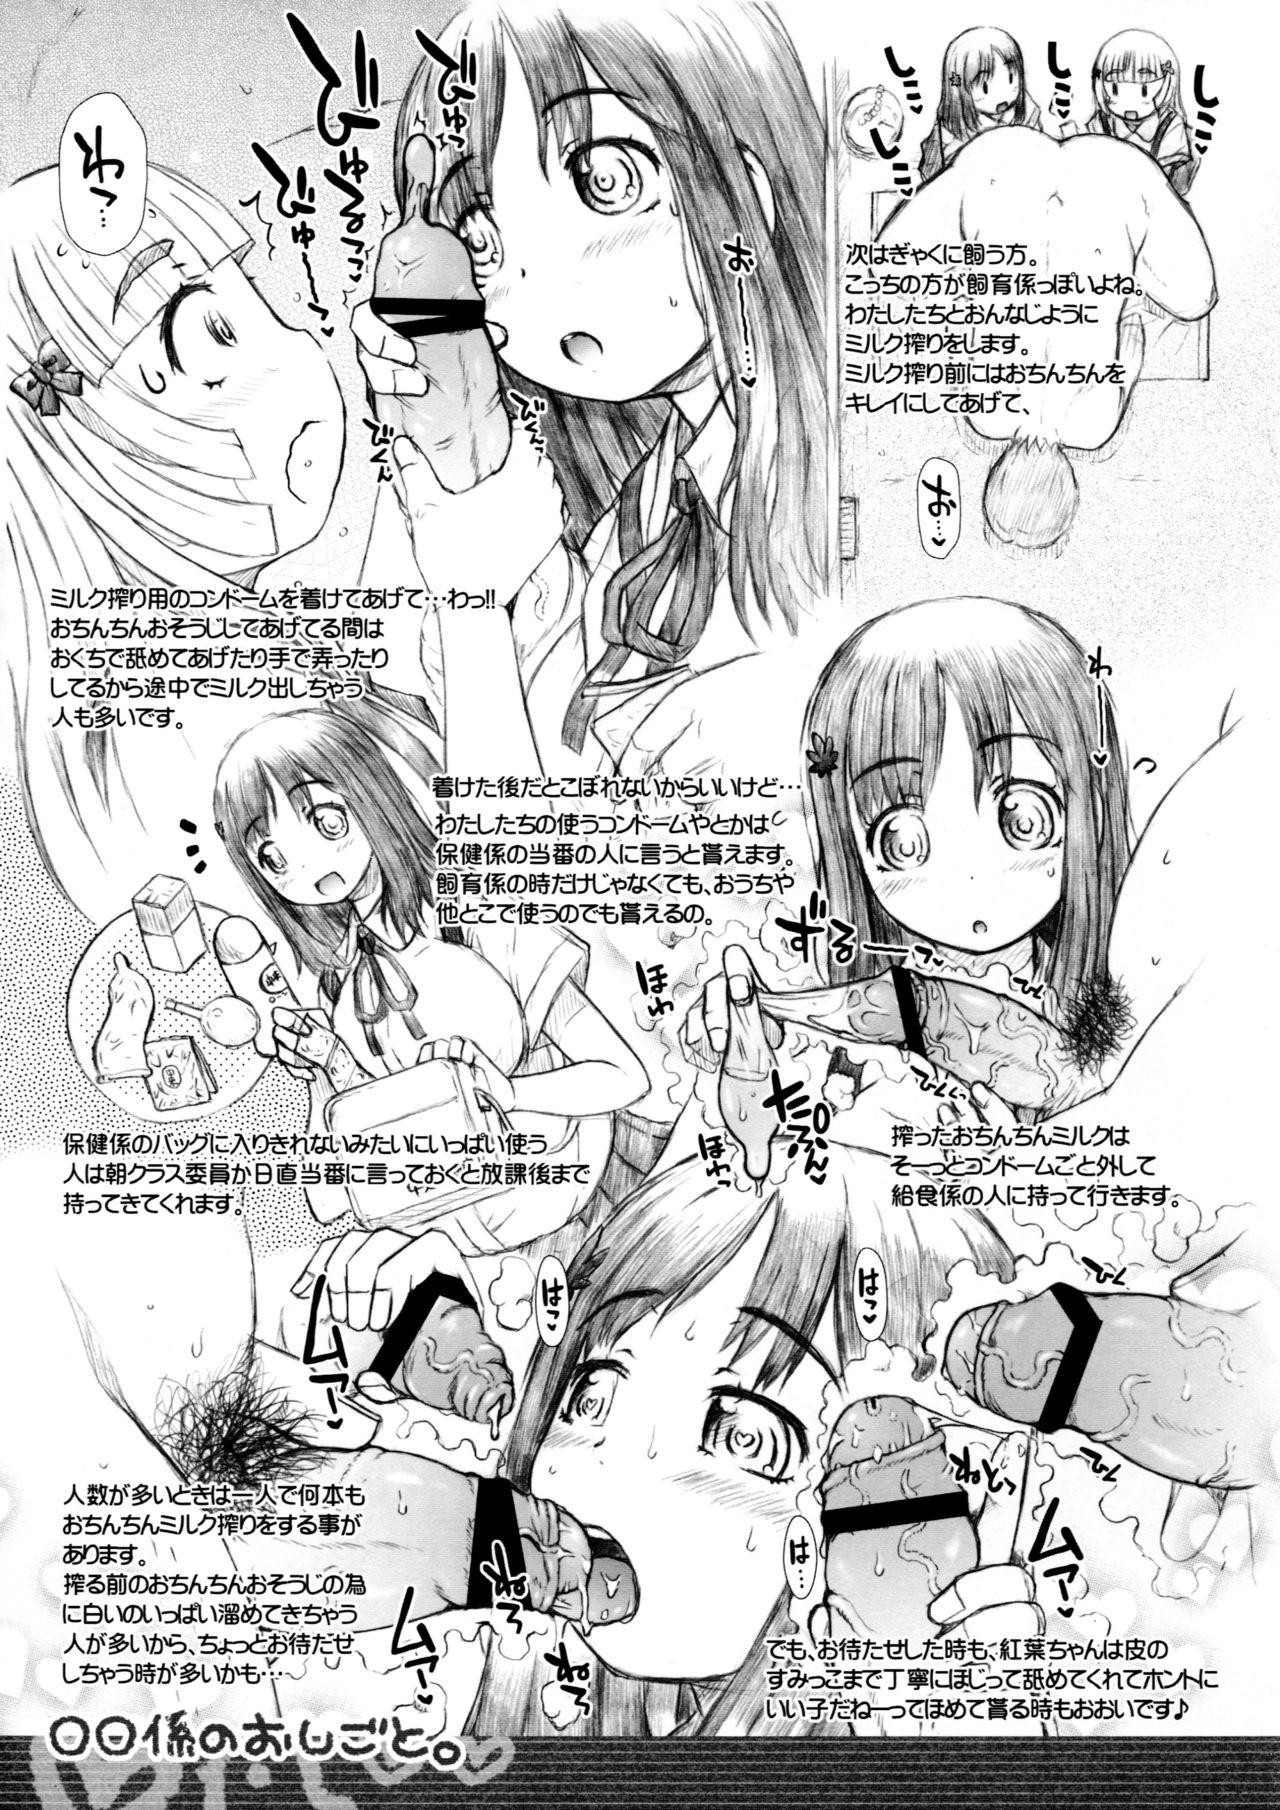 Bra Marumaru Gakari no Oshigoto - Original Tia - Page 4